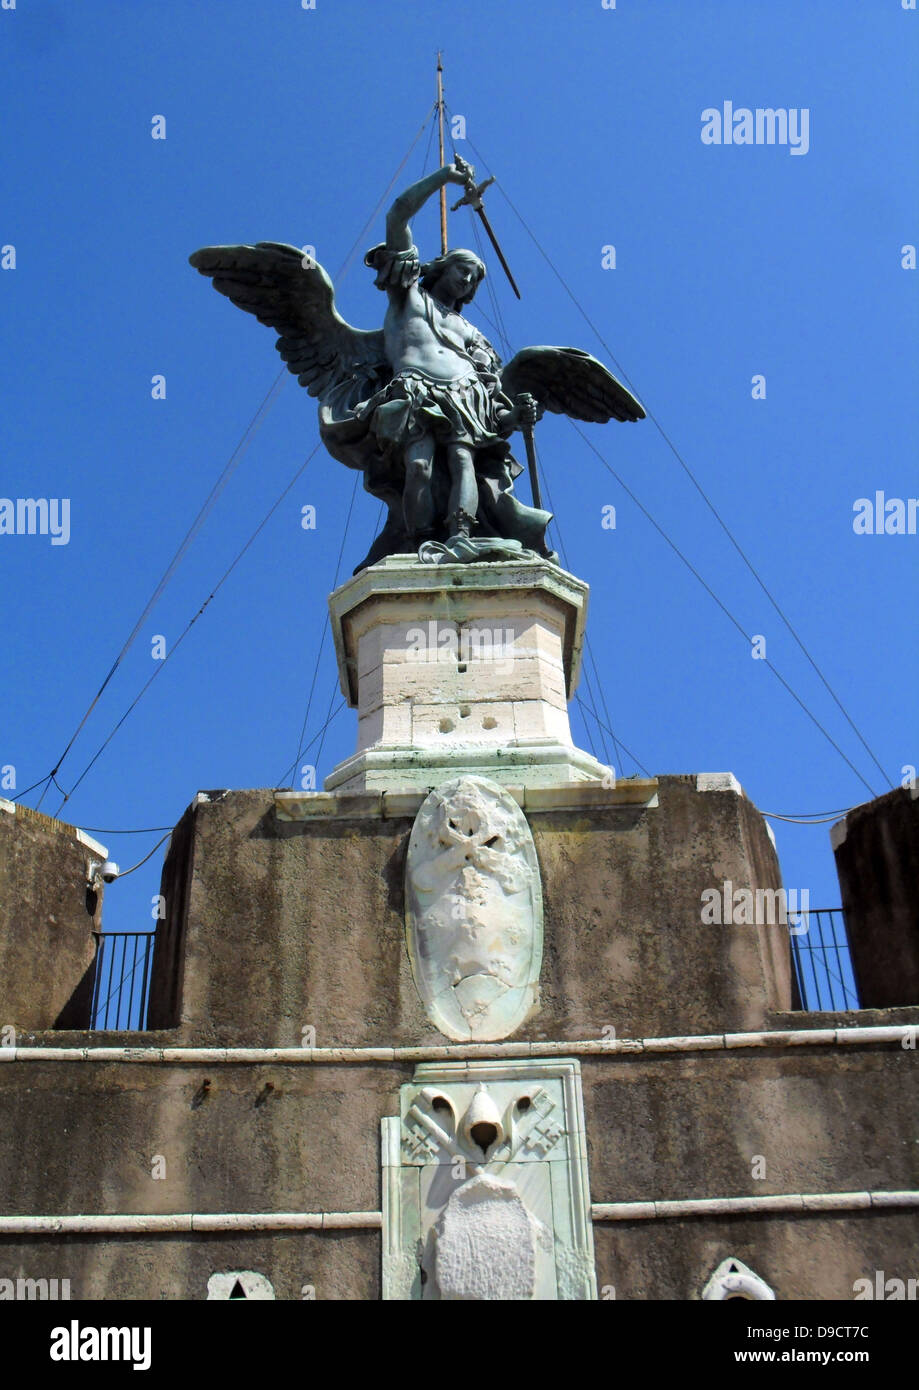 La statua in bronzo di San Michele Arcangelo, in piedi sulla sommità del castello di San Angelo, Roma, modellata nel 1753 da Pietro Anton von Verschaffelt (1710û1793). Il Mausoleo di Adriano, usualmente noto come Castel Sant'Angelo, Roma, Italia. Foto Stock